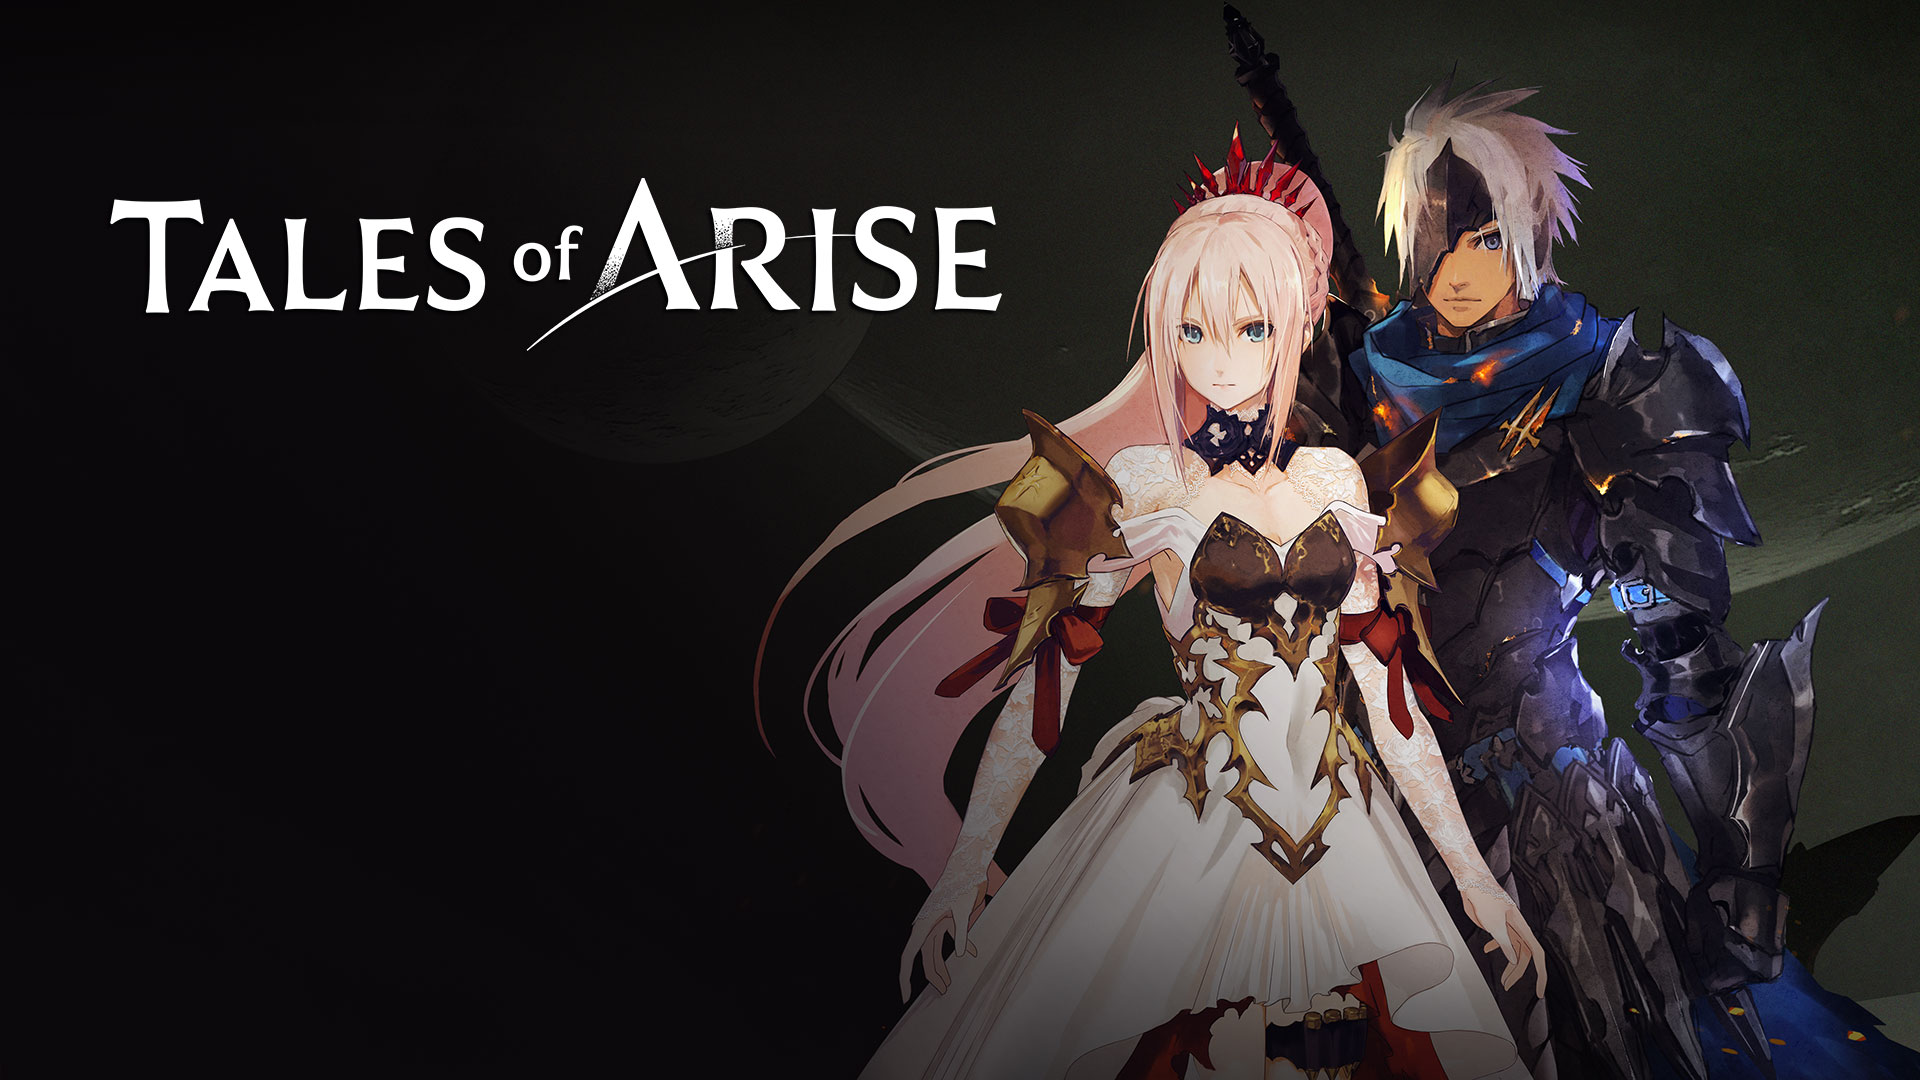 فروش بازی Tales of Arise از مرز یک میلیون نسخه گذشت